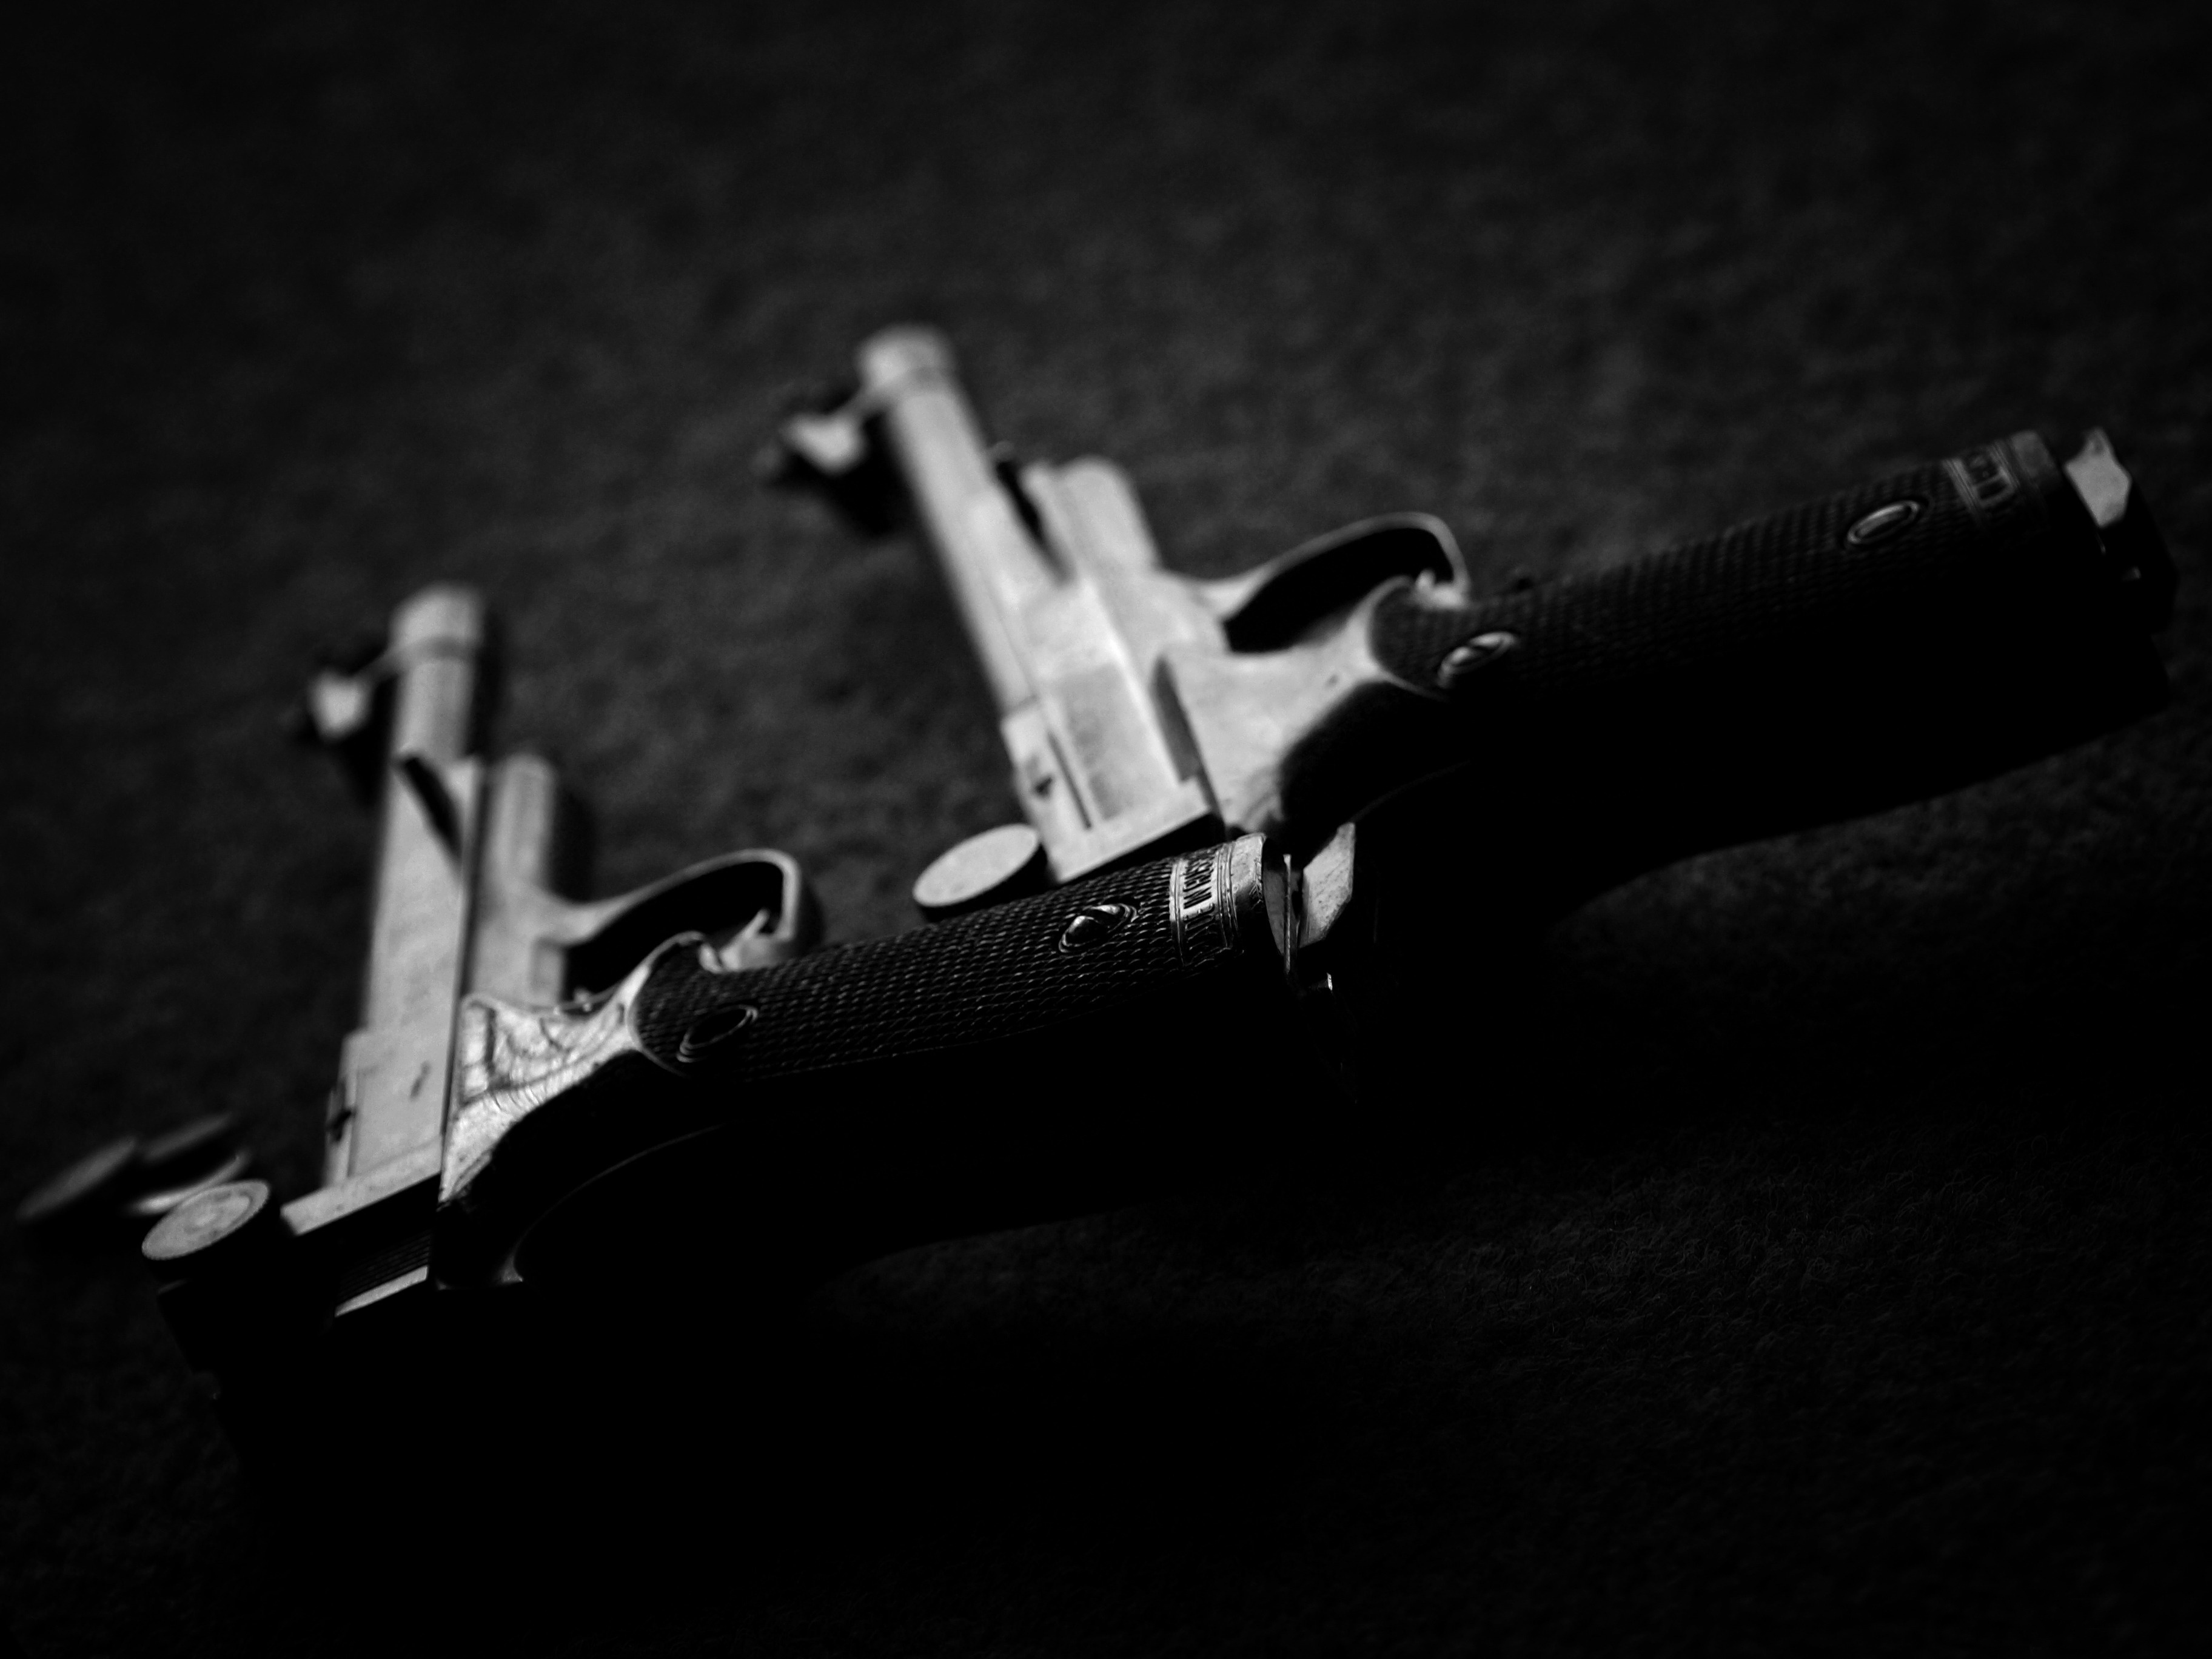 Handy-Wallpaper Pistole, Waffen kostenlos herunterladen.